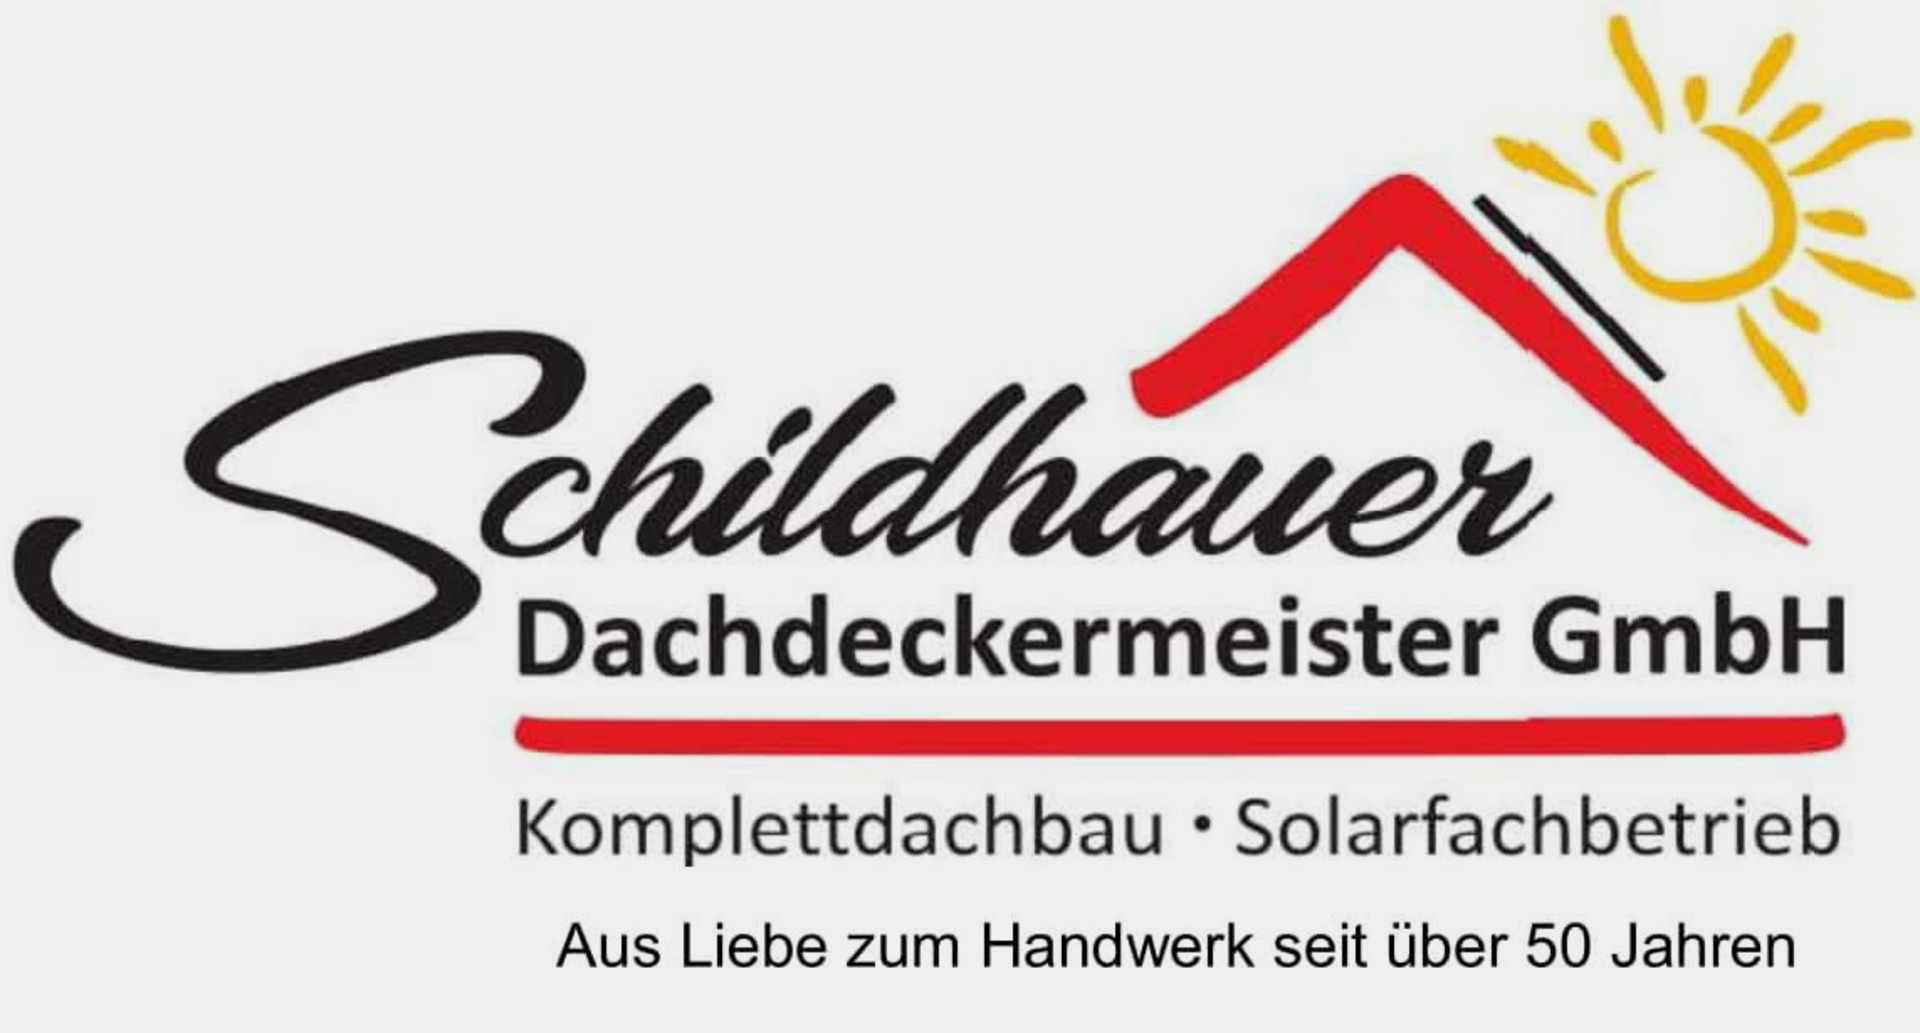 Schildhauer Dachdeckermeister GmbH